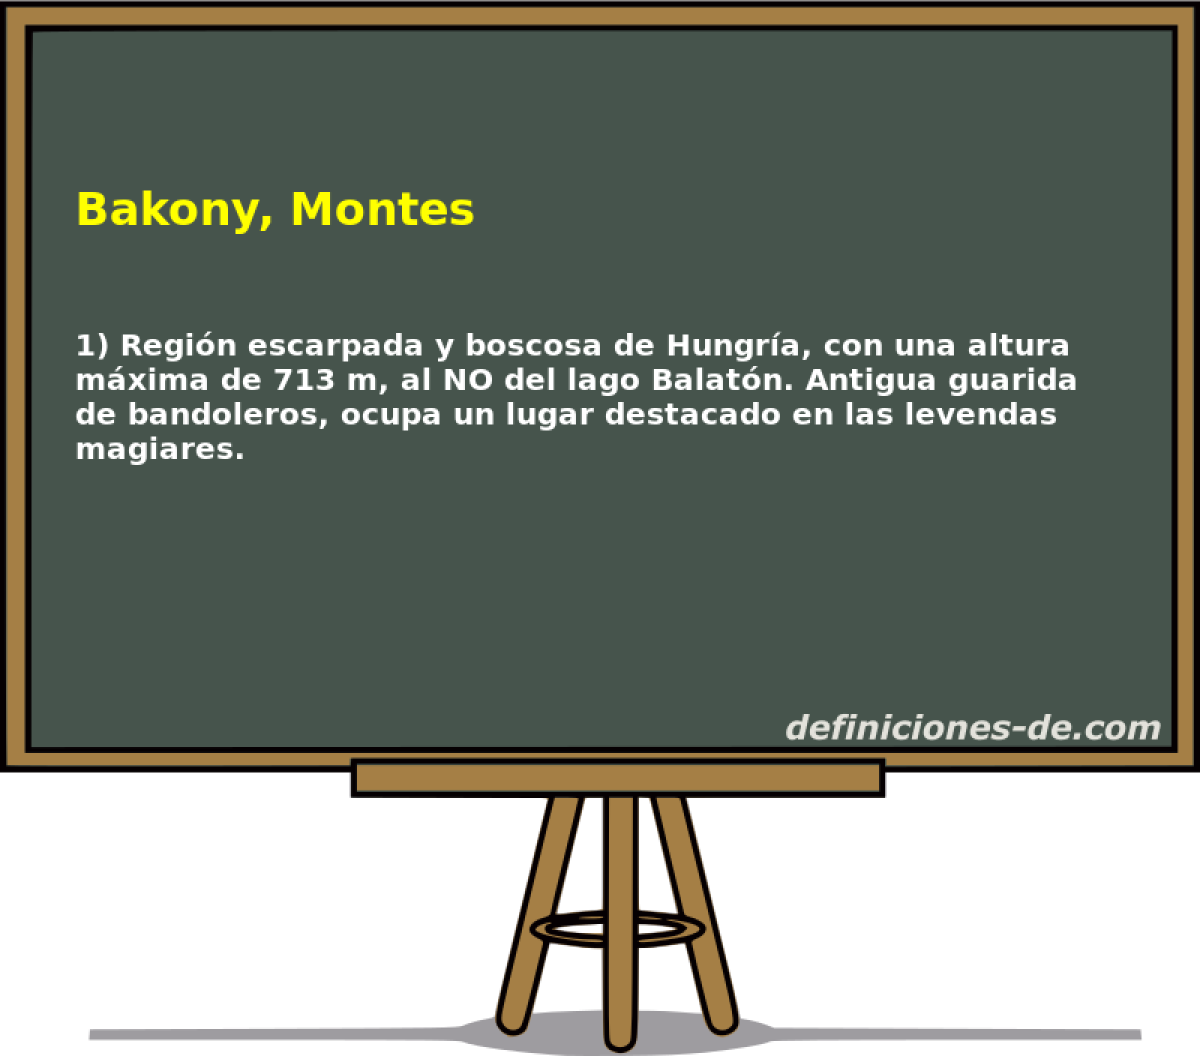 Bakony, Montes 